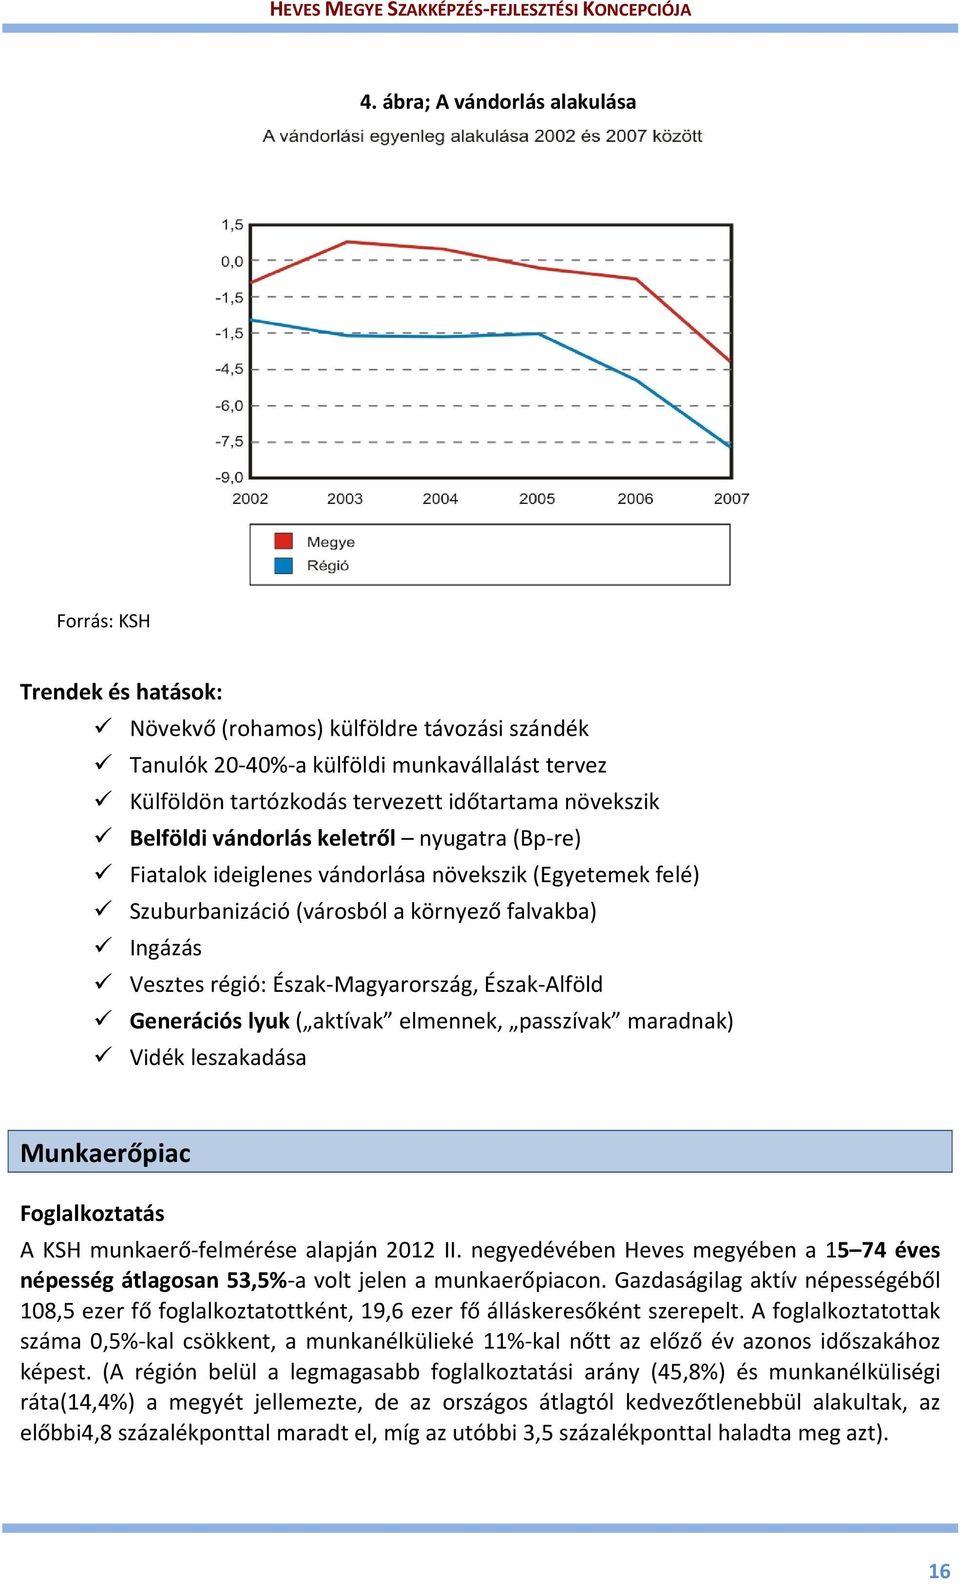 Magyarország, Észak Alföld Generációs lyuk ( aktívak elmennek, passzívak maradnak) Vidék leszakadása Munkaerőpiac Foglalkoztatás A KSH munkaerő felmérése alapján 2012 II.